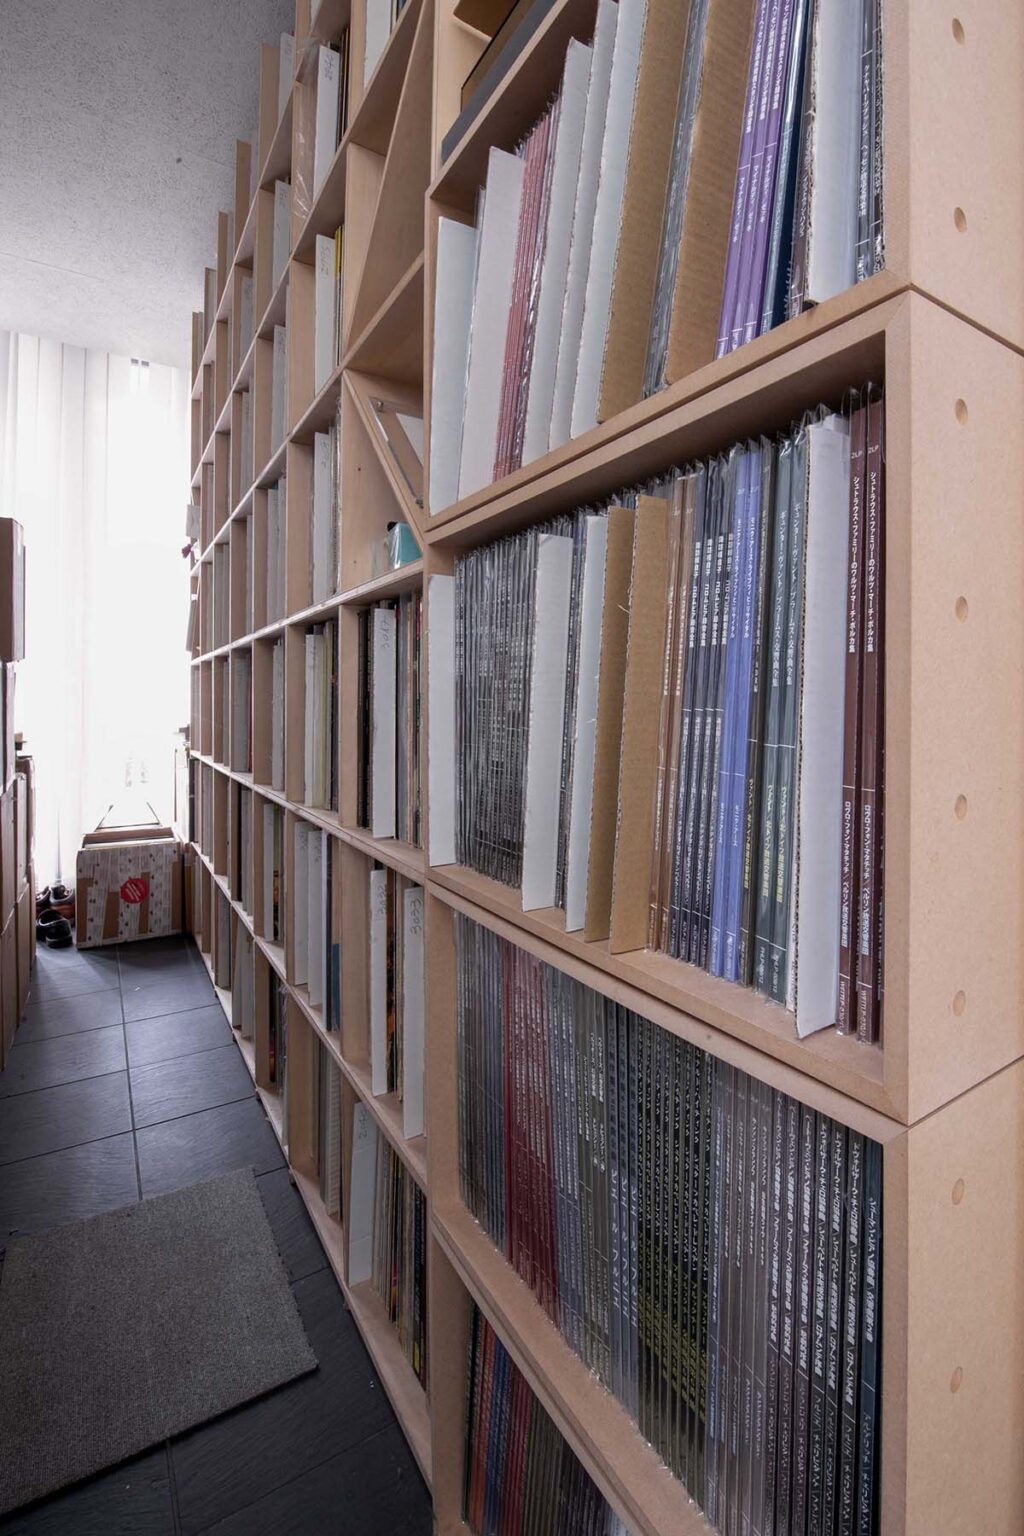 壁一面の本棚　レコード収納